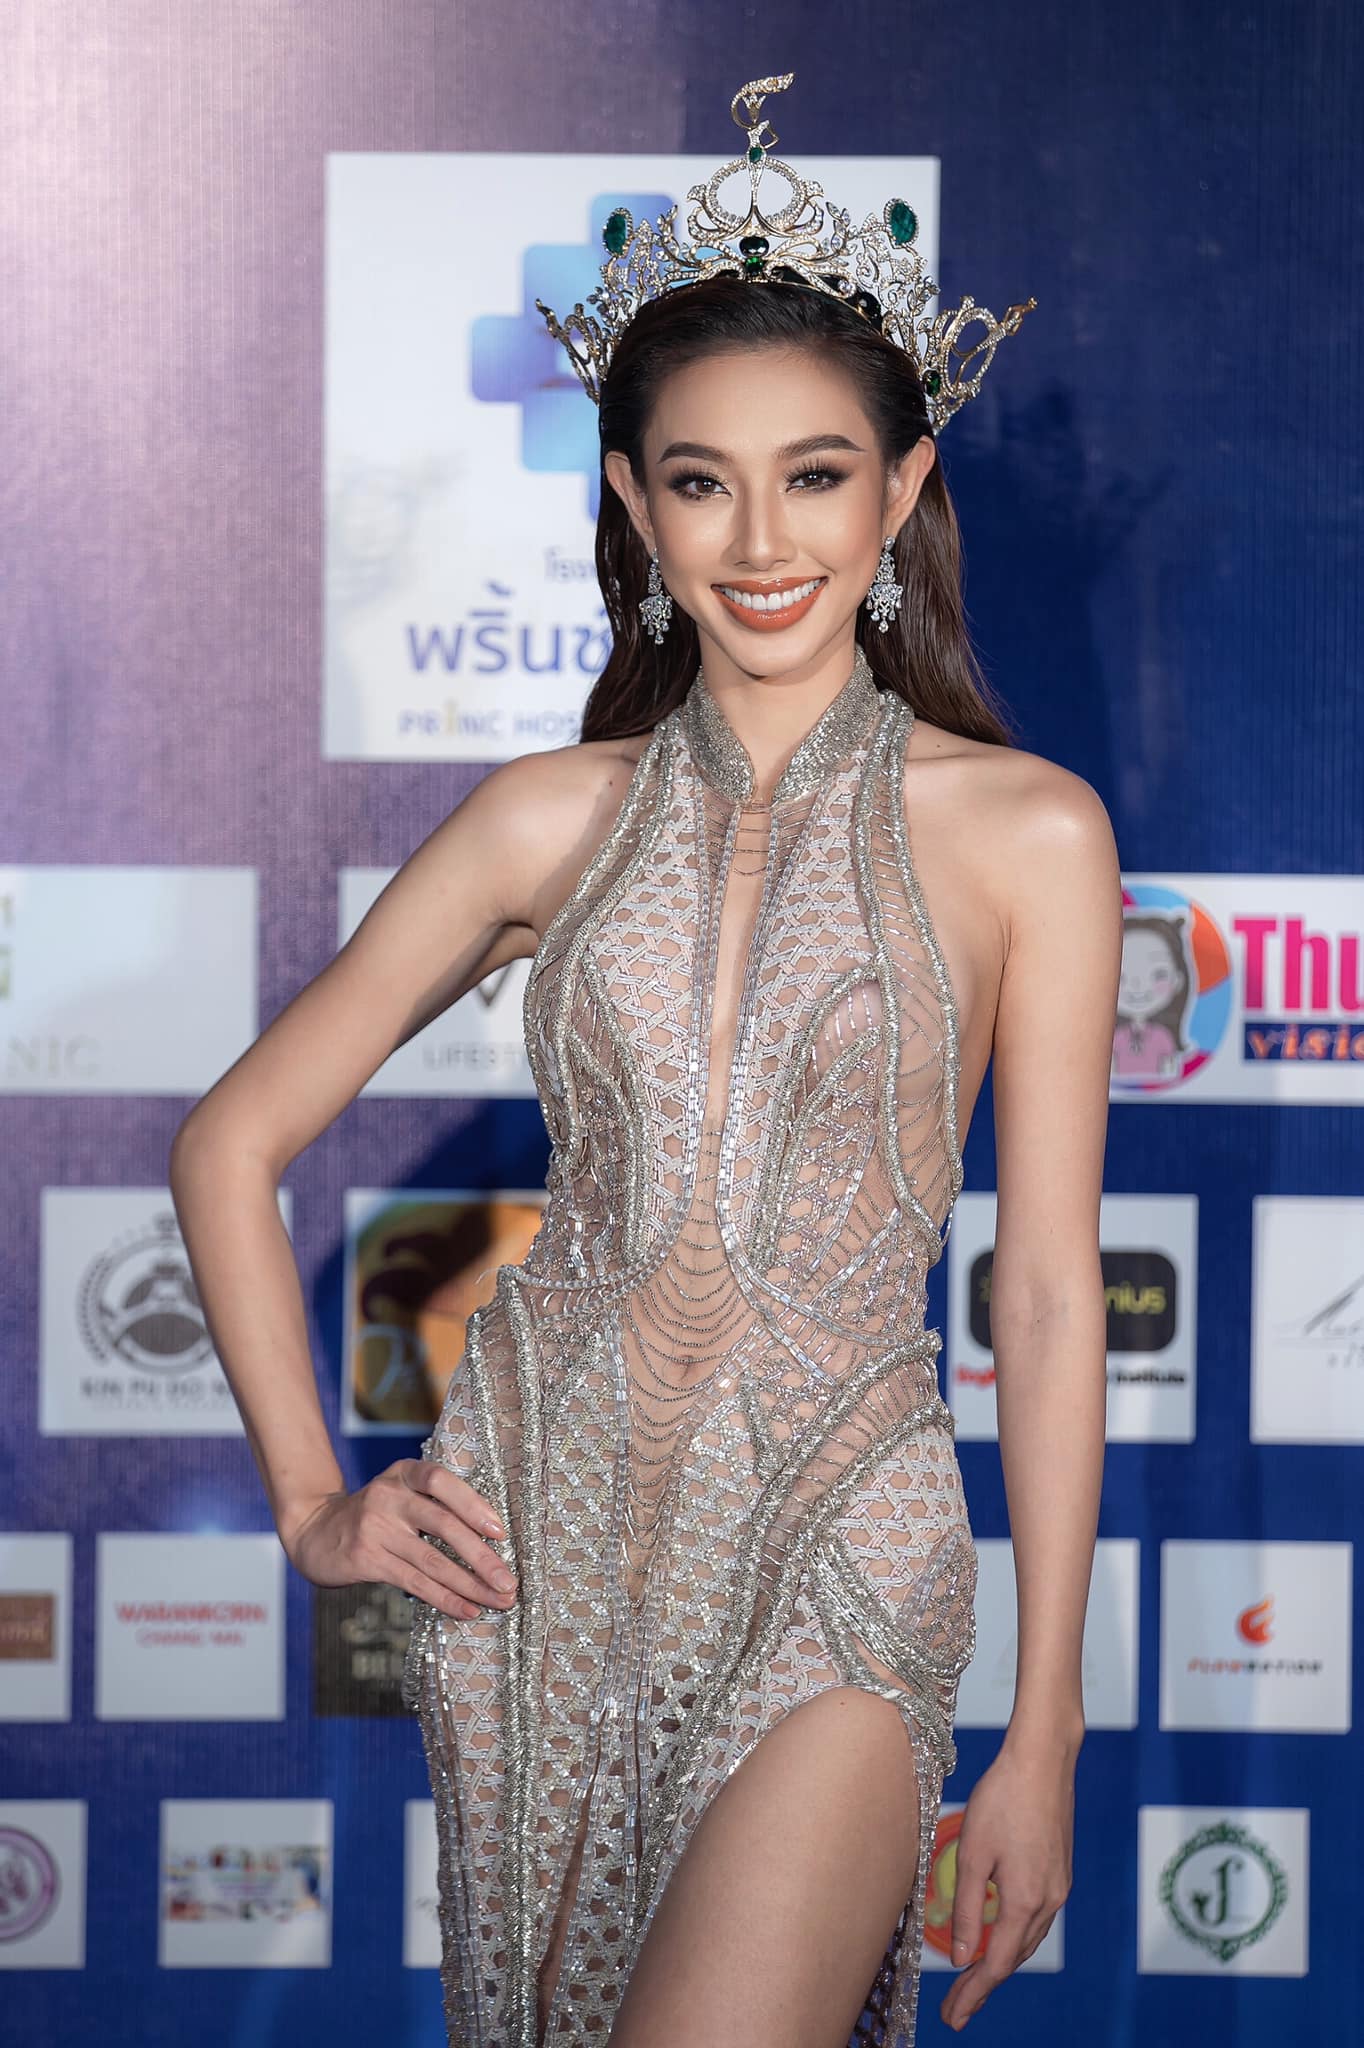 Thùy Tiên sexy Mê khoe dáng hở bạo, Hoa hậu Thùy Tiên liên tục mắc lỗi lộ nội y kém duyên - Ảnh 12.